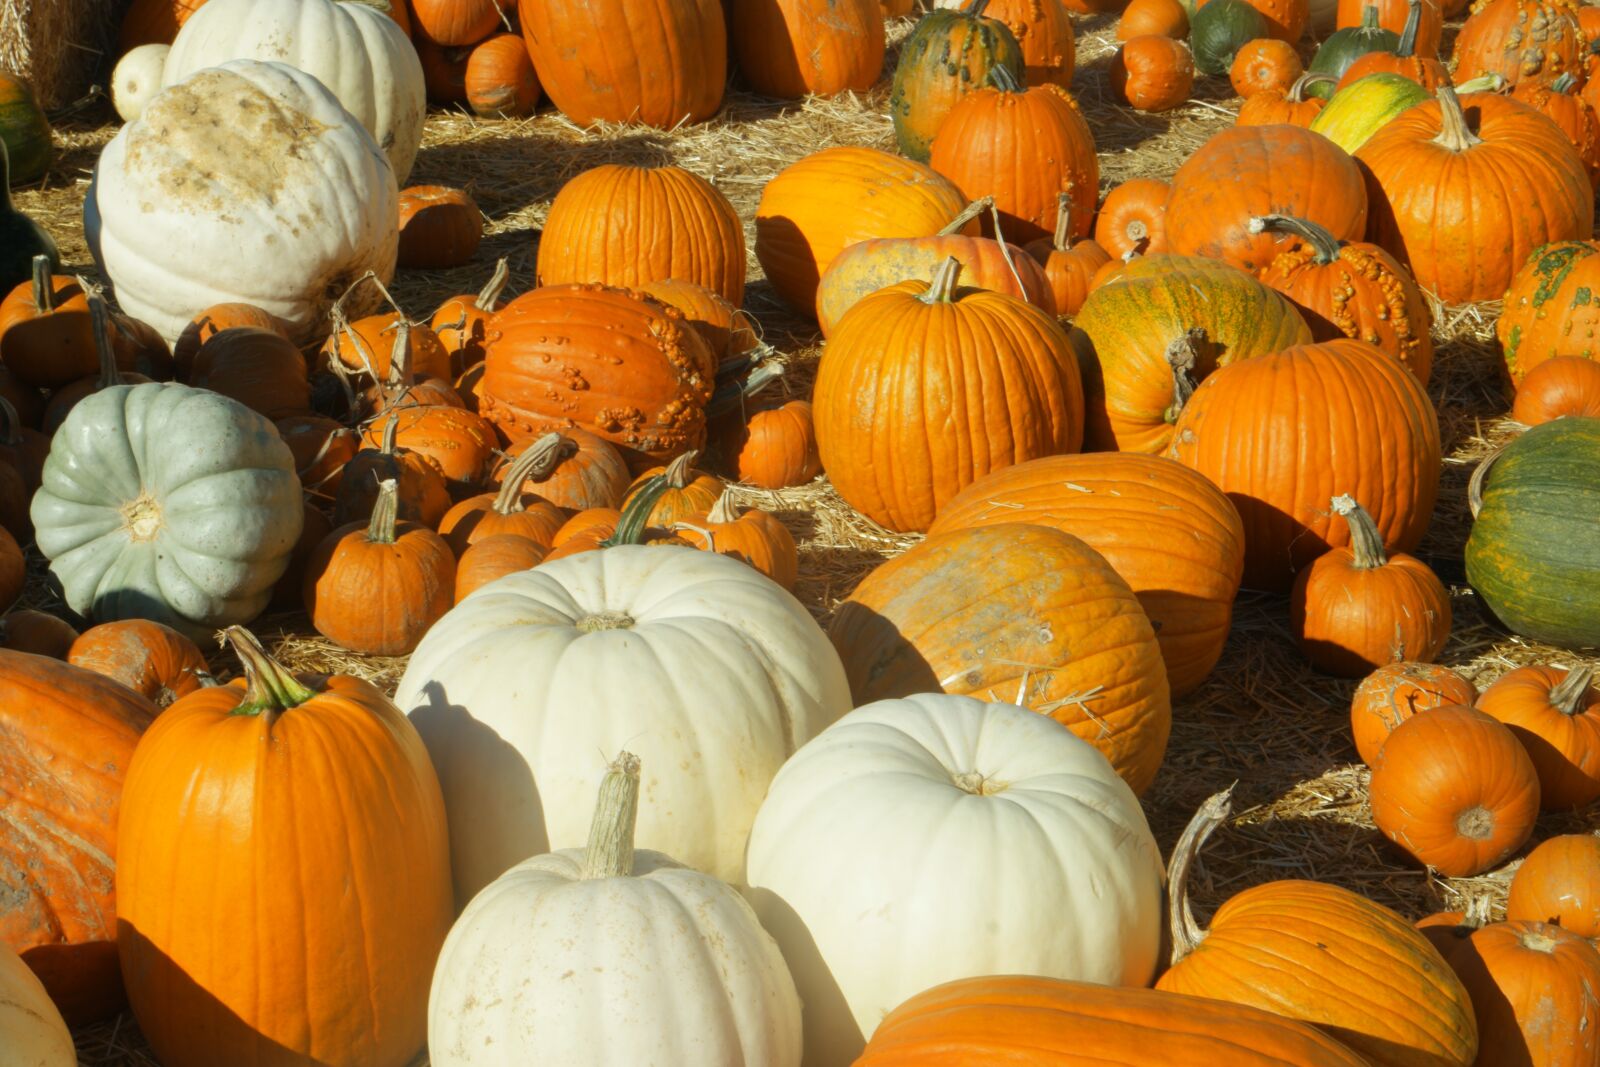 Samsung NX1 sample photo. Pumpkins, pumpkin patch, halloween photography